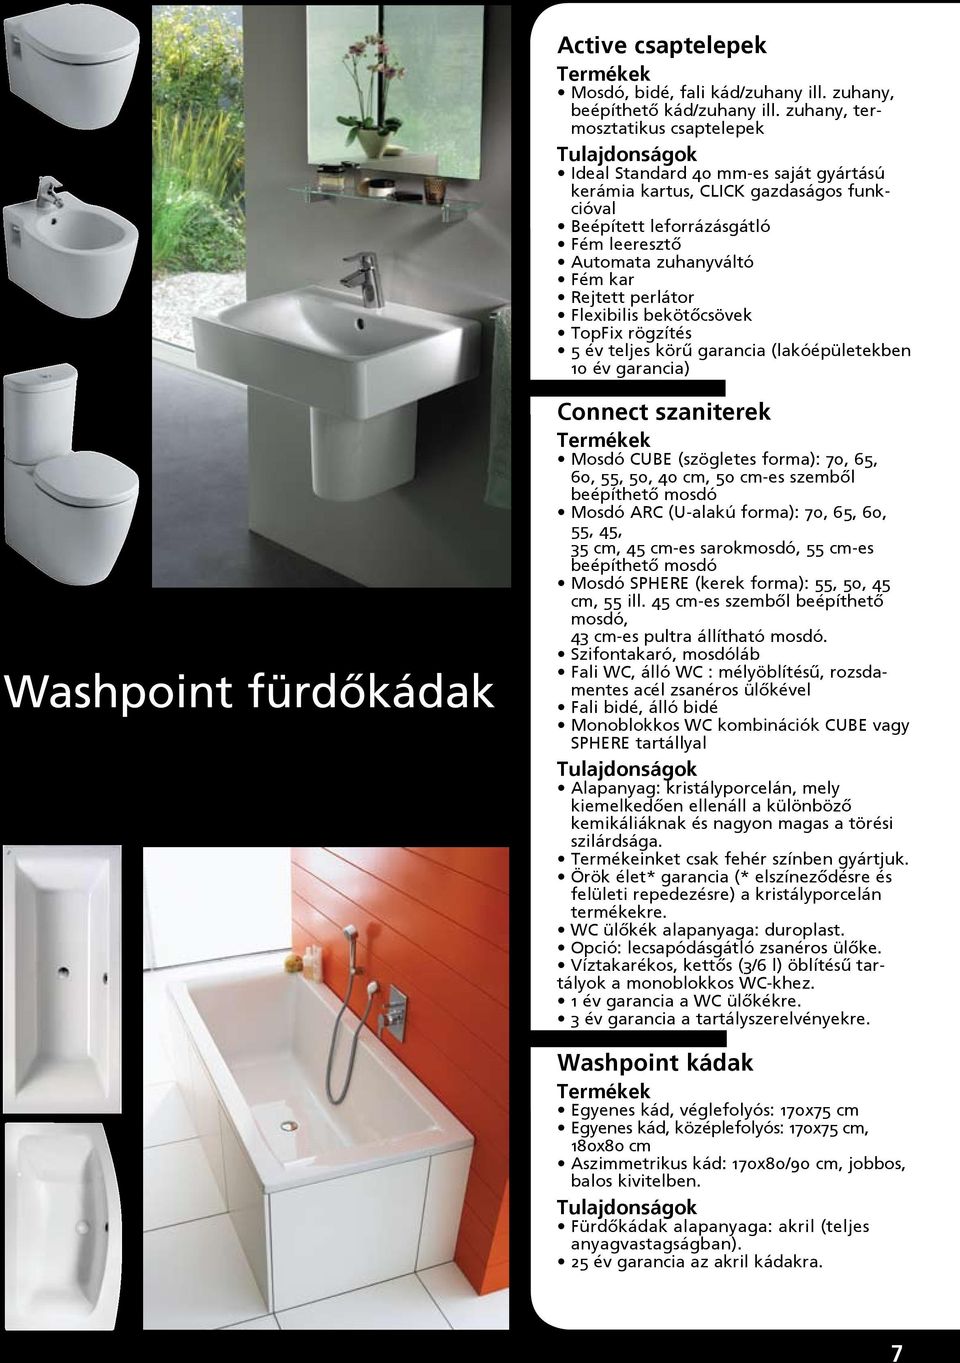 perlátor Flexibilis bekötőcsövek TopFix rögzítés 5 év teljes körű garancia (lakóépületekben 10 év garancia) Washpoint fürdőkádak Connect szaniterek Mosdó CUBE (szögletes forma): 70, 65, 60, 55, 50,